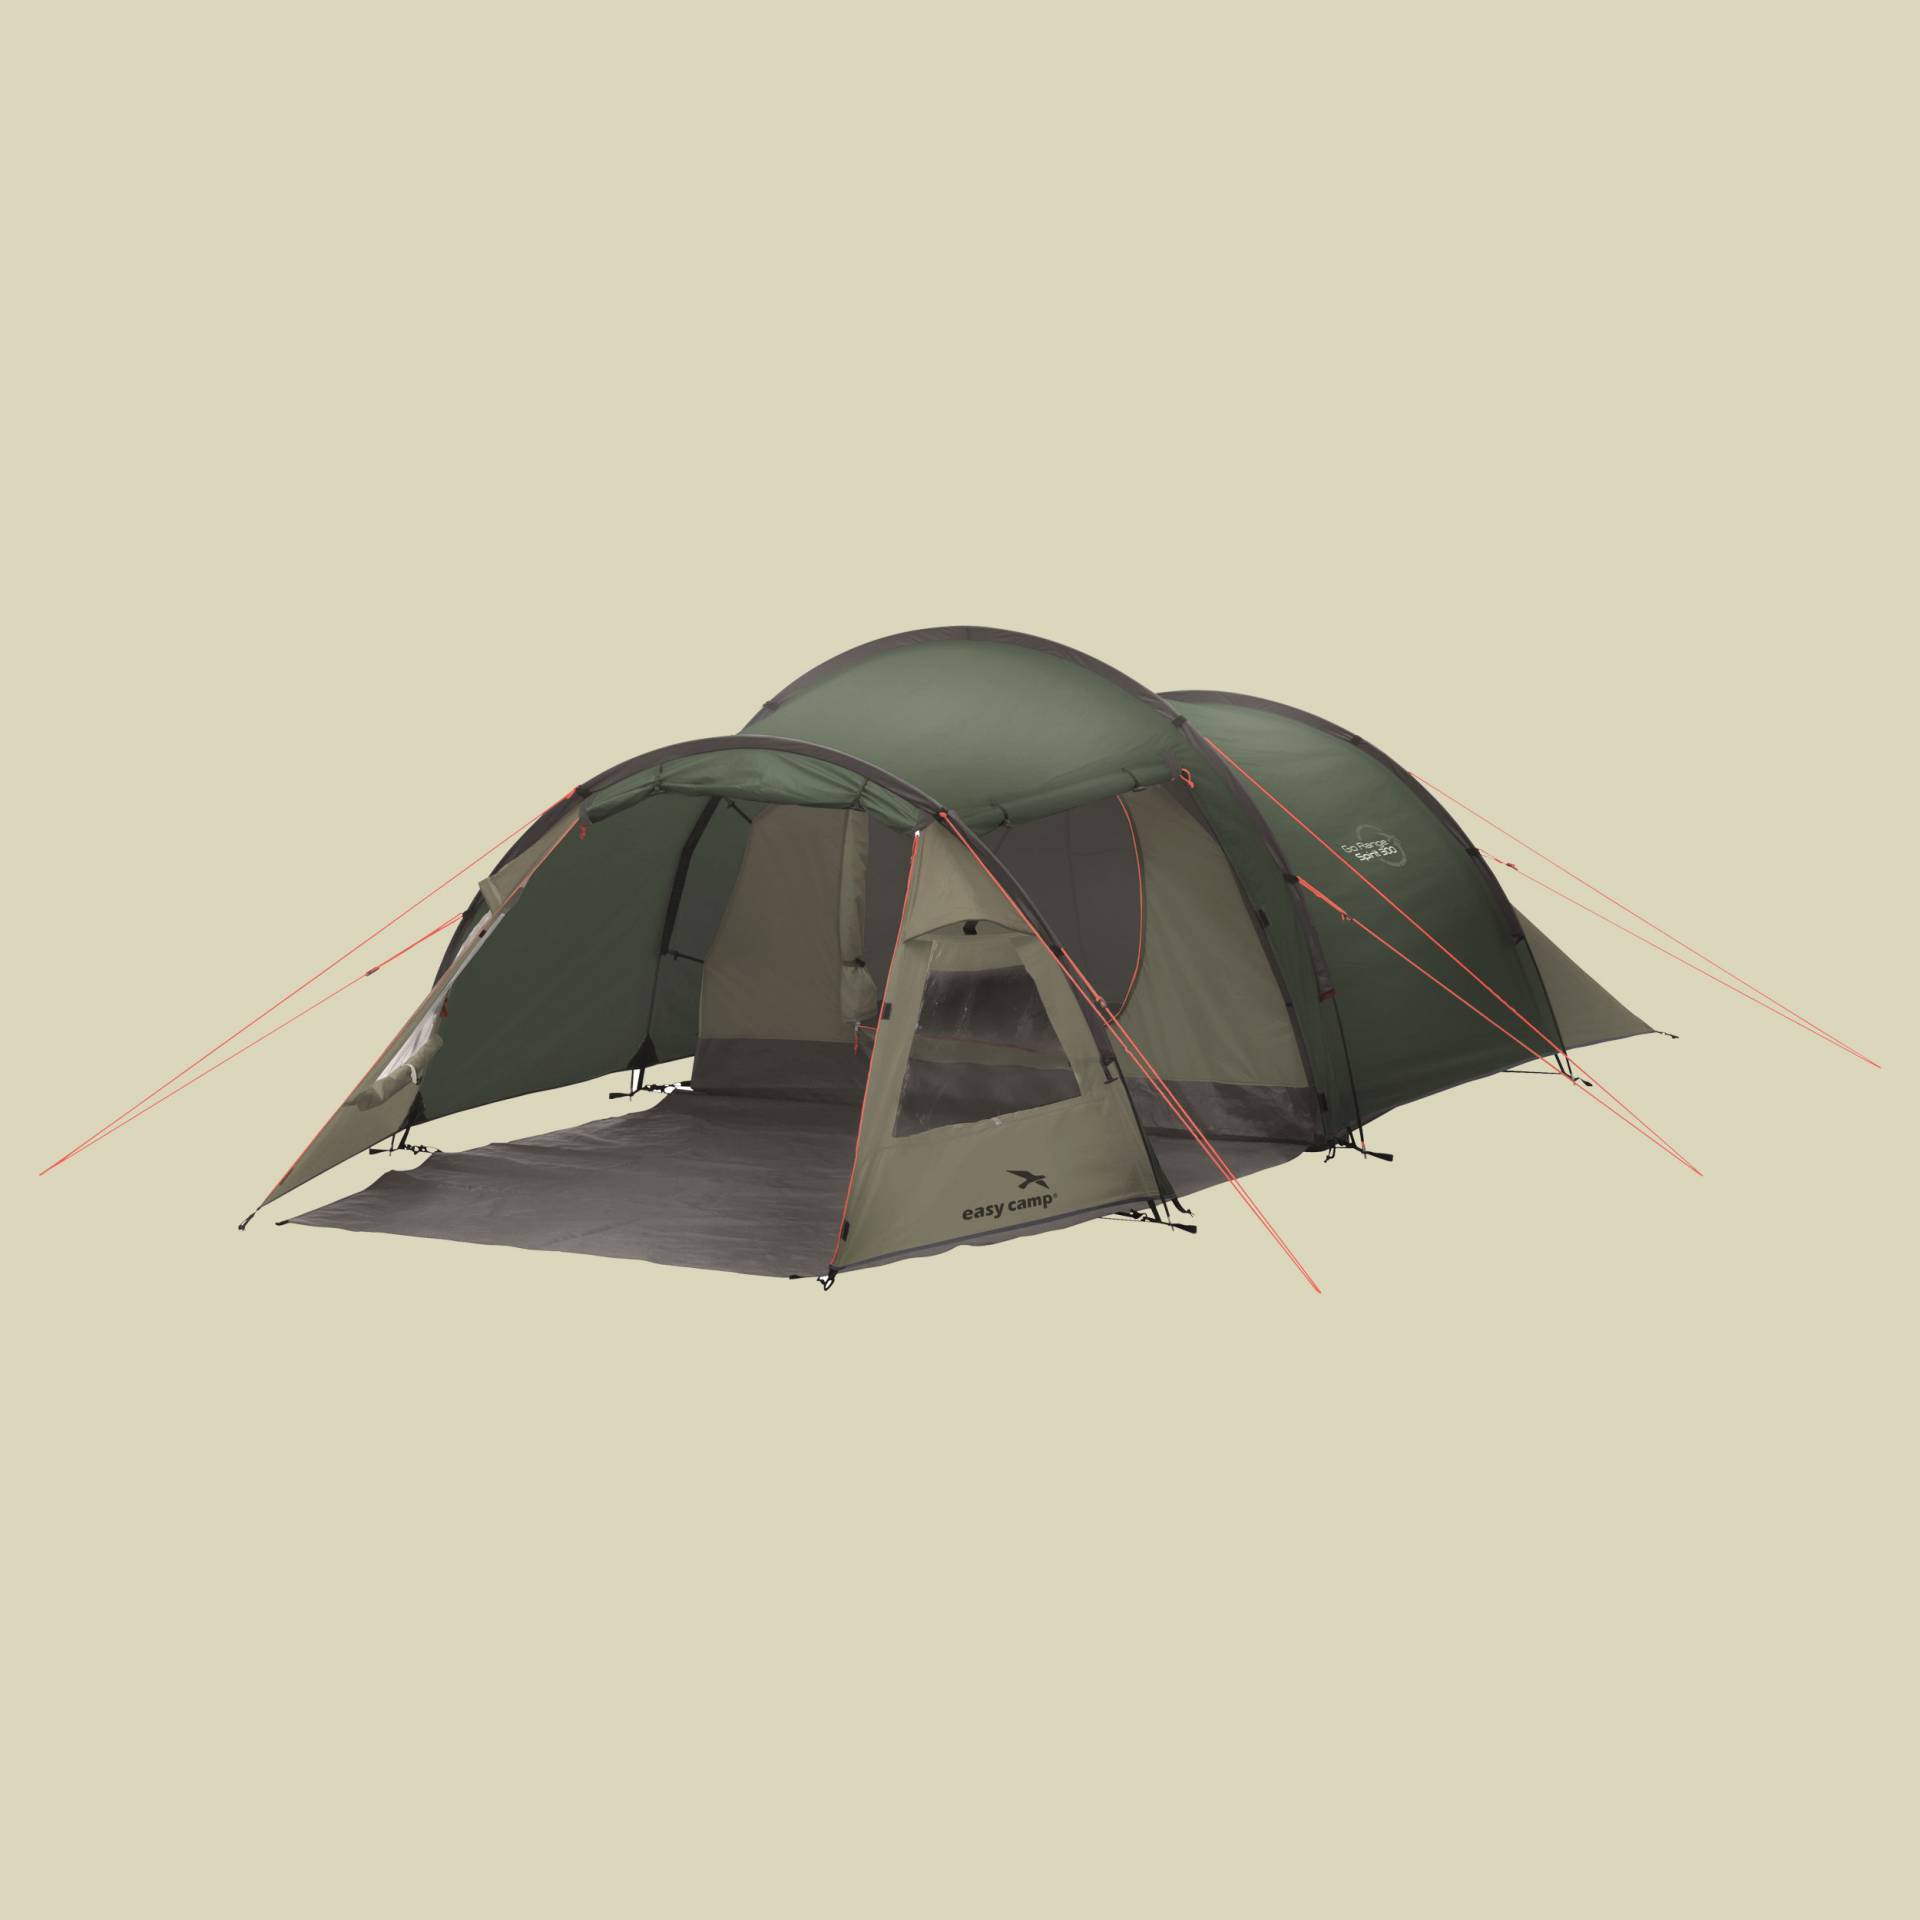 Spirit 300 3-Personen-Zelt Farbe: rustic green von Easy Camp